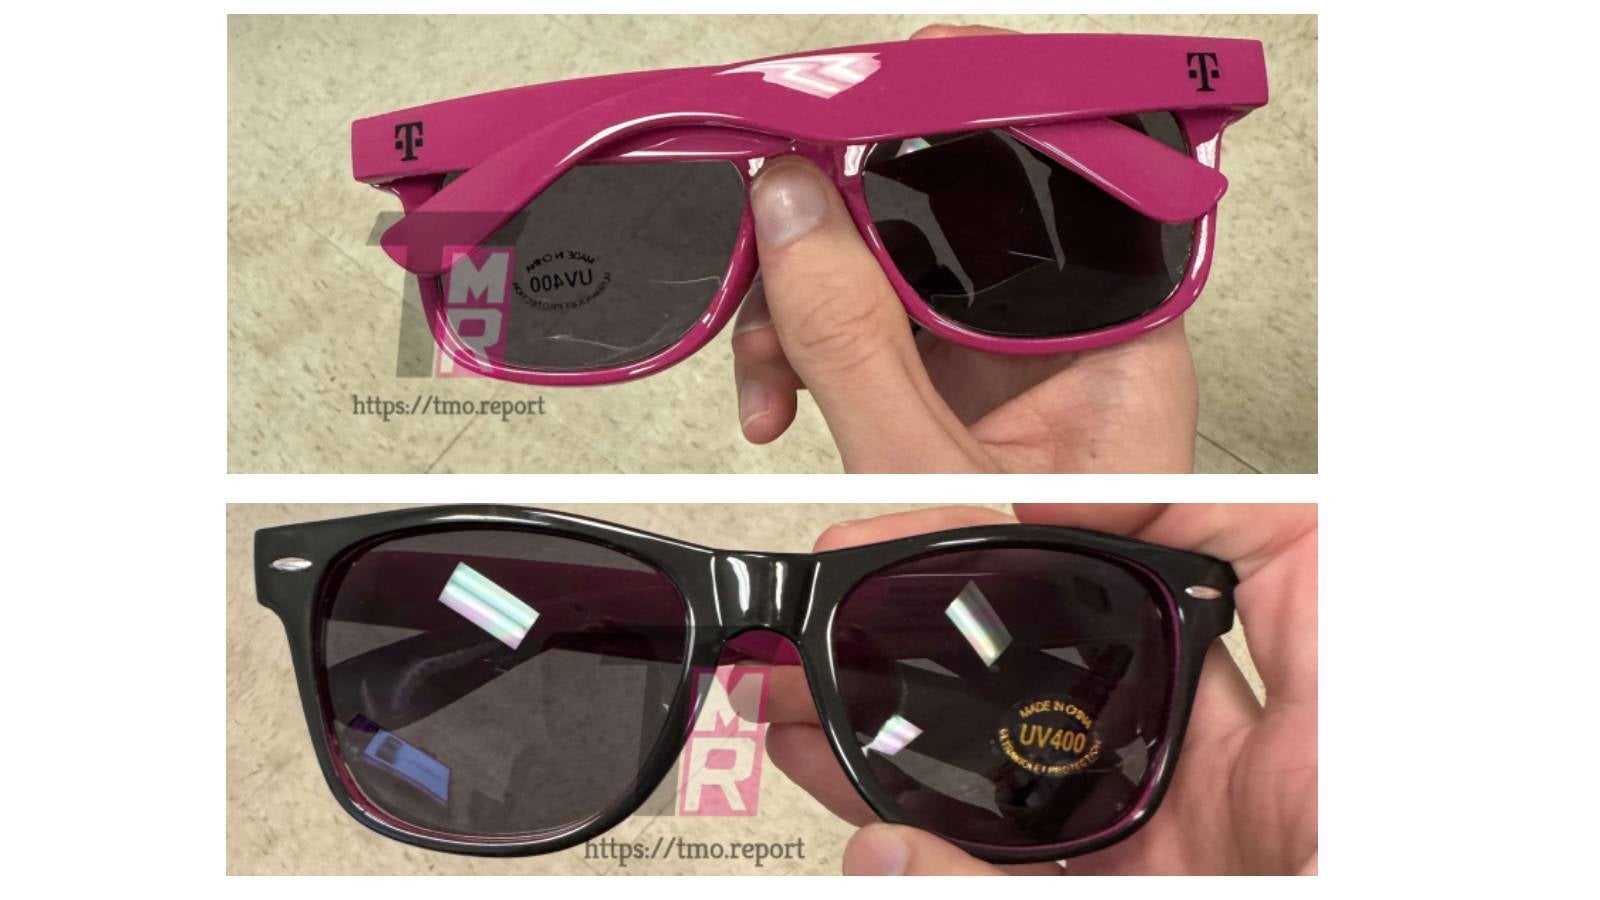 T-Mobile'ın müşterilerine göndereceği güneş gözlüklerinin sızdırılmış resmi - Yeni bir T-Mobile bedava ürünü yakında karşınızda - onu zamanında aldığınızdan emin olun